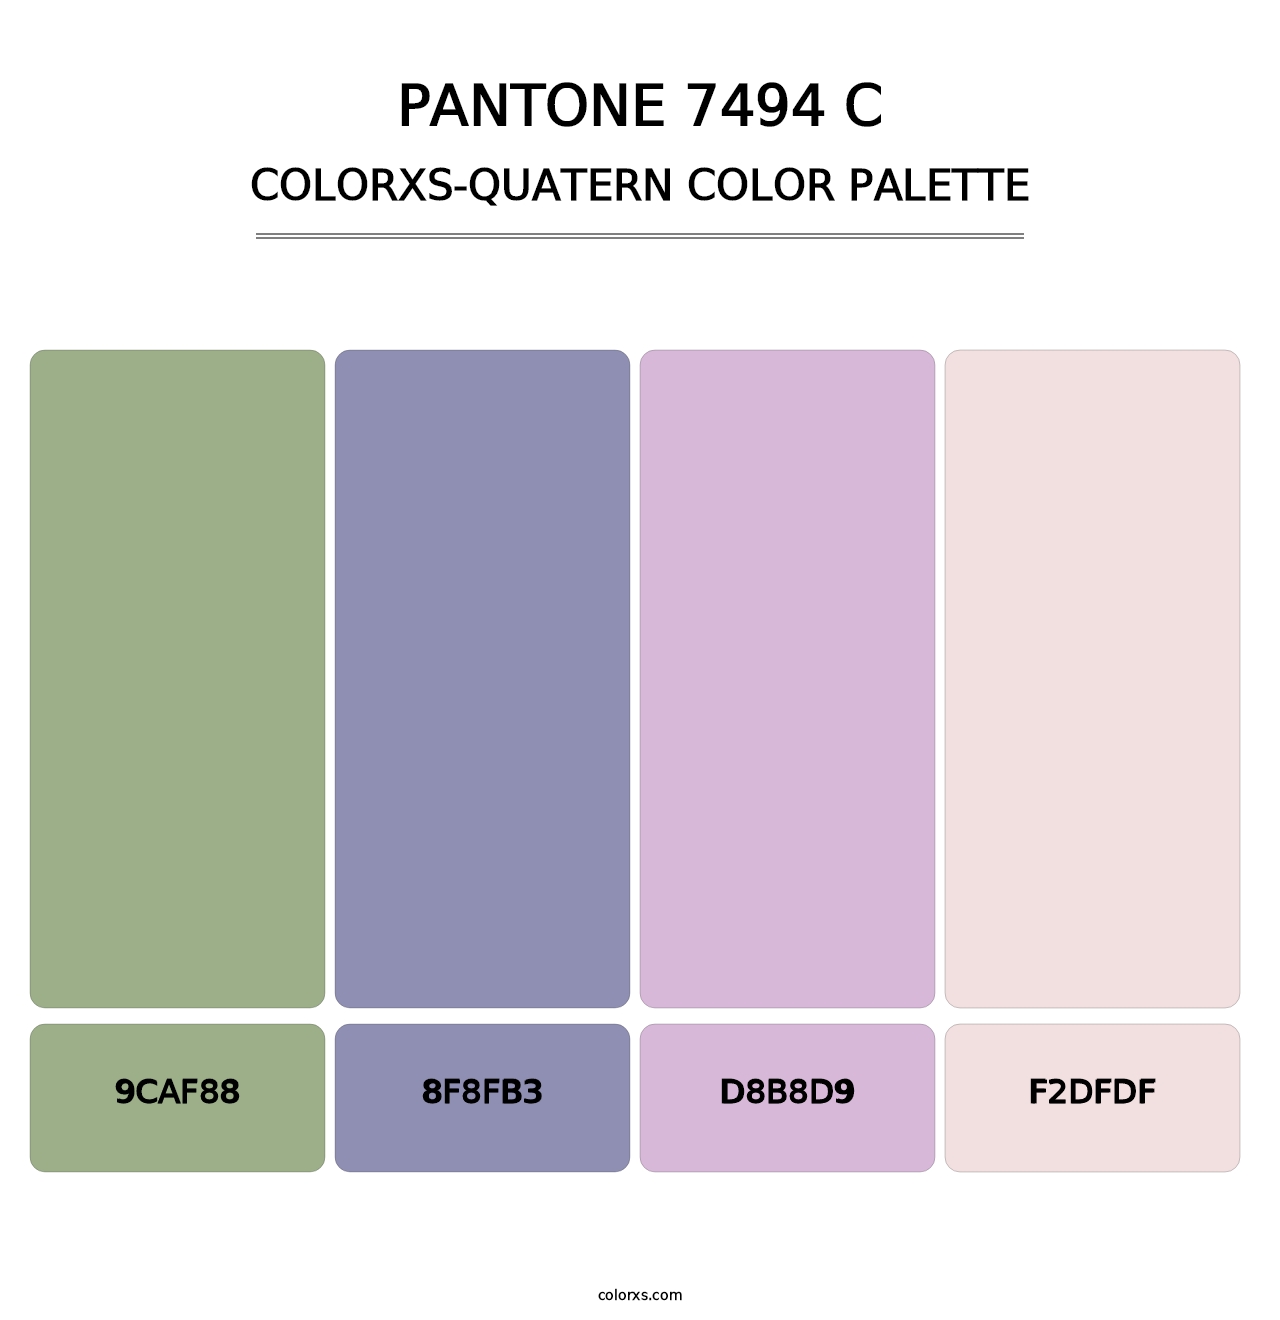 PANTONE 7494 C - Colorxs Quatern Palette